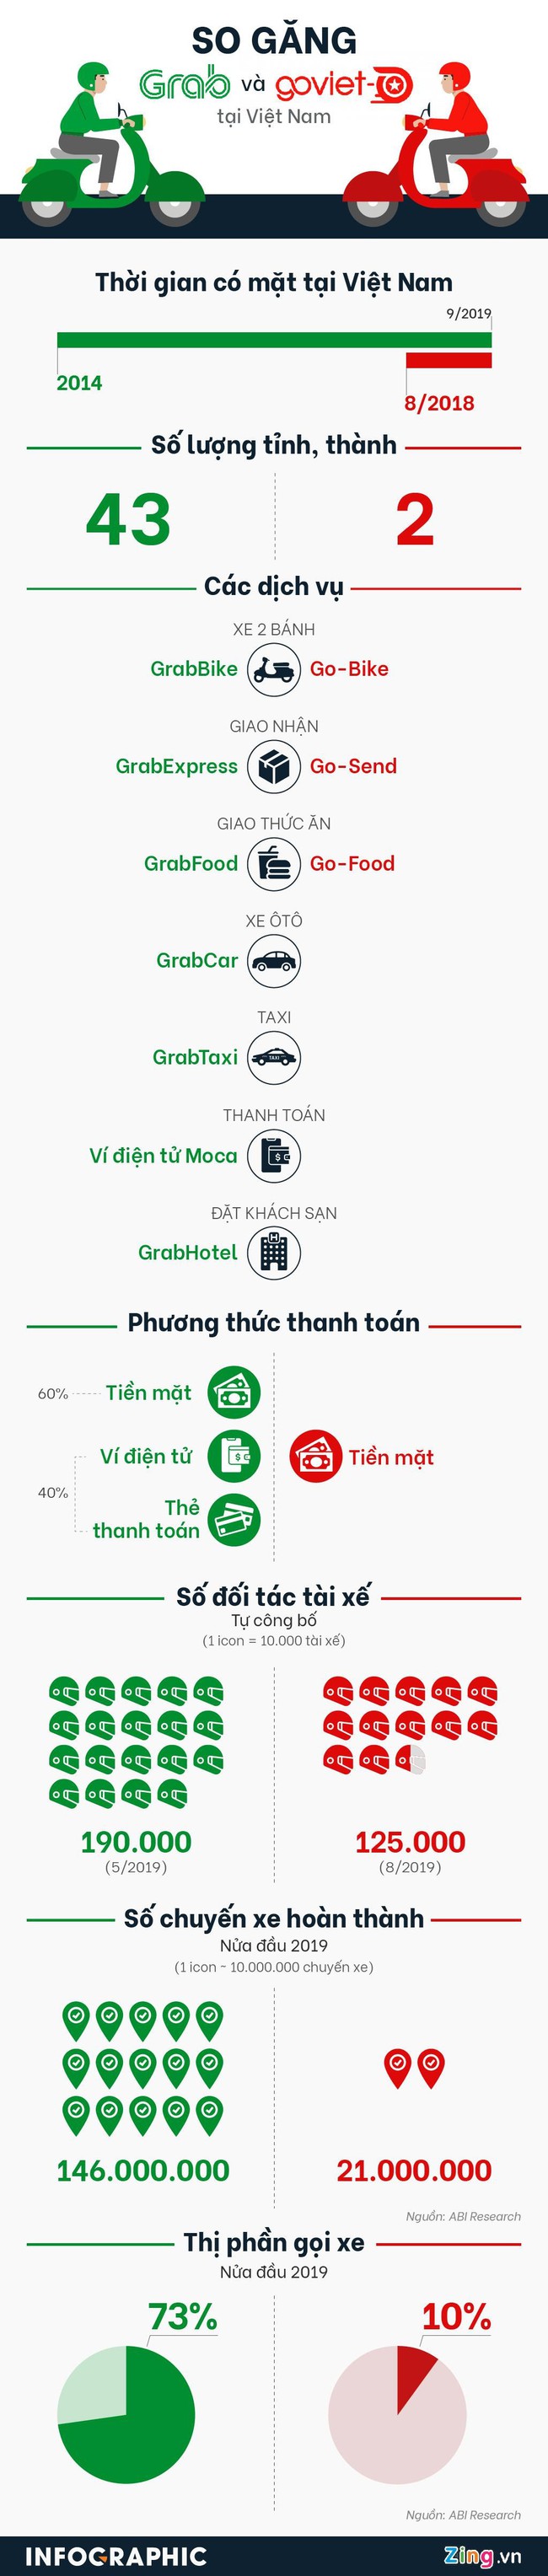 Thế độc quyền của Grab trên thị trường gọi xe Việt - Ảnh 1.